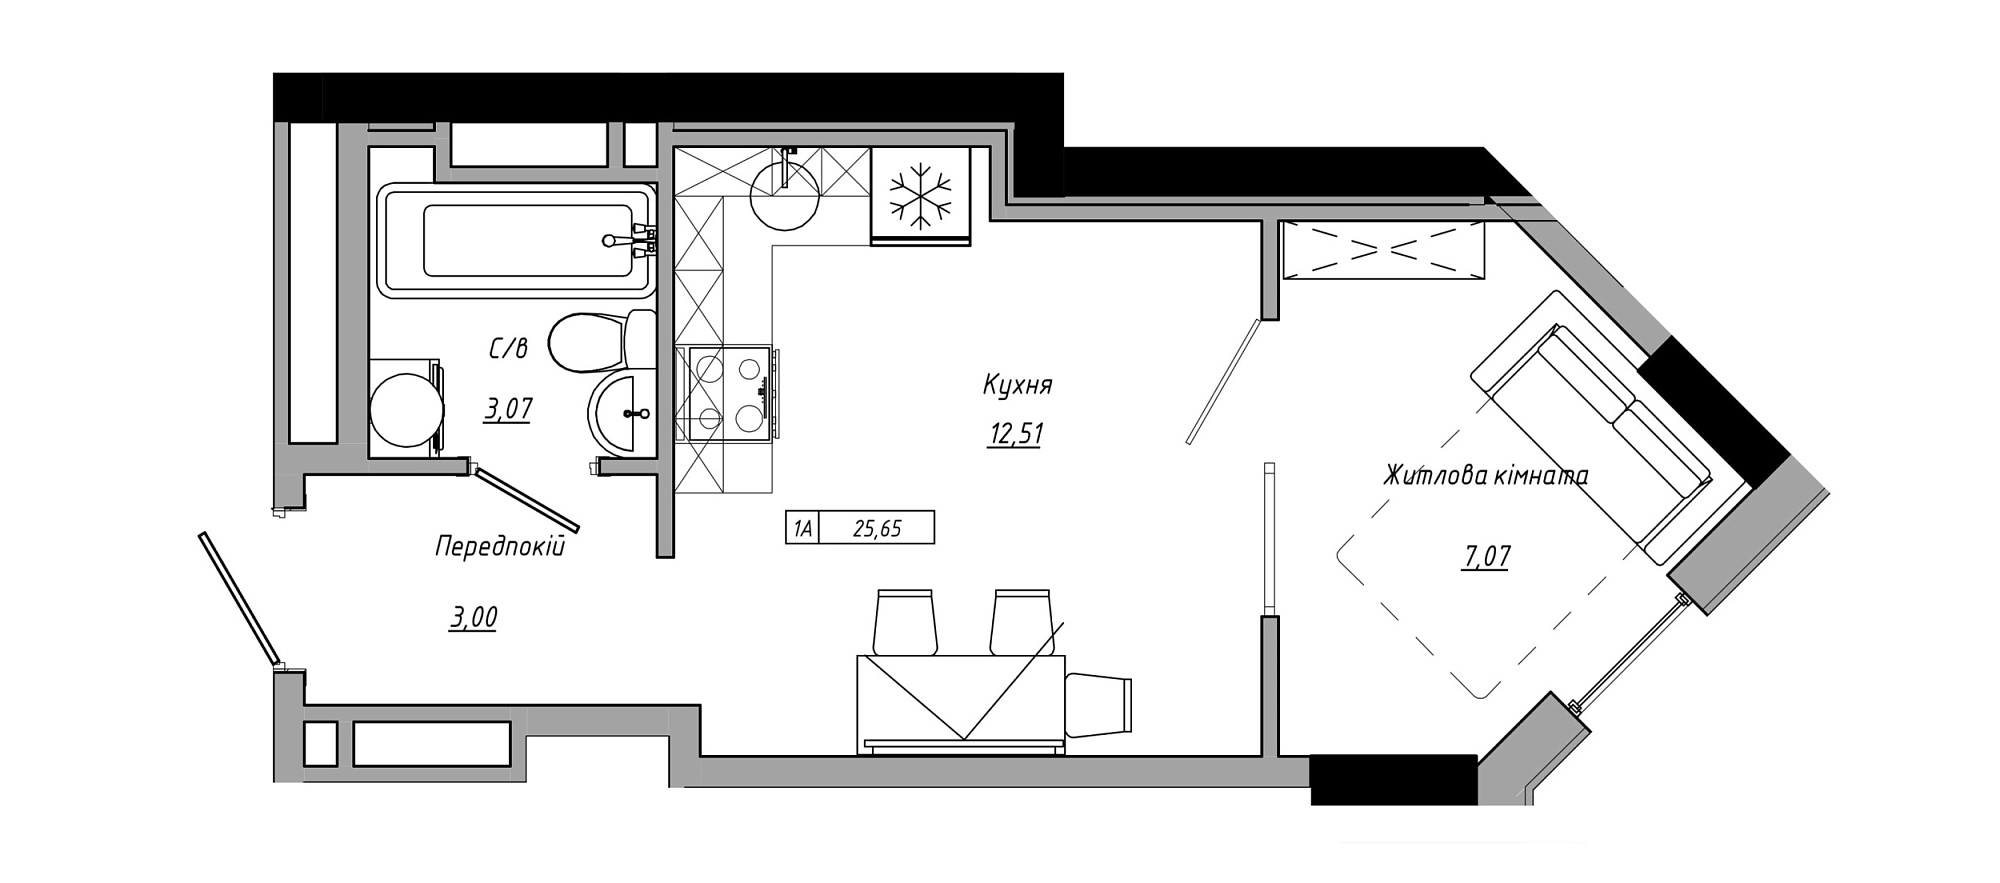 Планировка 1-к квартира площей 25.65м2, AB-21-06/00001.